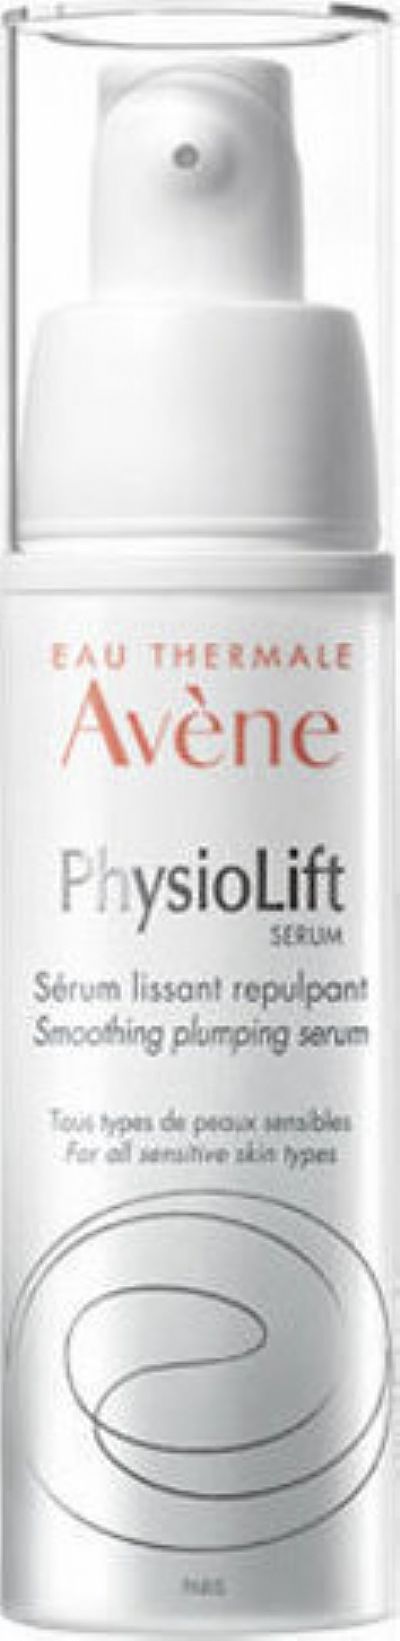 Avene Physiolift Smoothing Plumping Serum 30ml ληξη 8/22